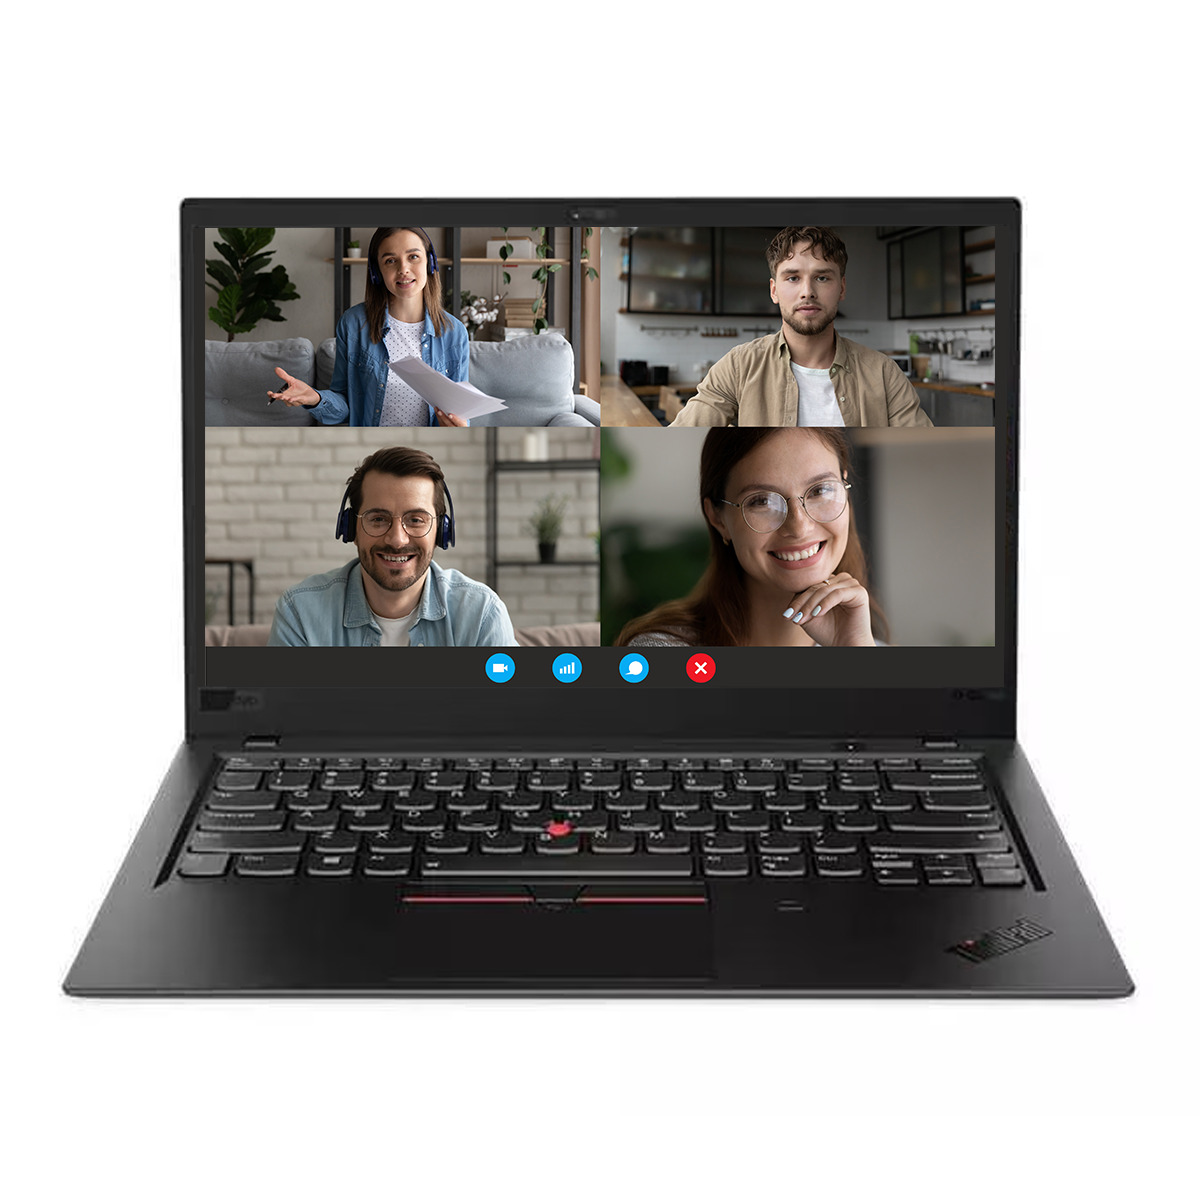 Lenovo ThinkPad X1 Carbon G6 – Moc i mobilność w jednym Szukasz laptopa, który łączy w sobie wydajność, mobilność i elegancki design?  Poznaj Lenovo ThinkPad X1 Carbon G6. Ten ultracienki i lekki laptop biznesowy został stworzony z myślą o użytkownikach, którzy potrzebują niezawodnego urządzenia do pracy w podróży.  Oto kilka zalet i korzyści z pracy na Lenovo ThinkPad X1 Carbon G6:  Wydajność:  Procesor Intel Core i7-8550u ósmej generacji zapewnia płynną pracę nawet przy wymagających zadaniach. 16 GB pamięci RAM umożliwia wielozadaniowość bez obniżania wydajności. Szybki dysk SSD o pojemności 256 GB zapewnia błyskawiczny czas rozruchu i transferu danych. Mobilność:  Ważący zaledwie 1,13 kg laptop jest łatwy do przenoszenia w podróży. Długi czas pracy na baterii (do 18 godzin) pozwala na pracę przez cały dzień bez konieczności ładowania. Wytrzymała konstrukcja z włókna węglowego zapewnia odporność na uderzenia i wstrząsy.